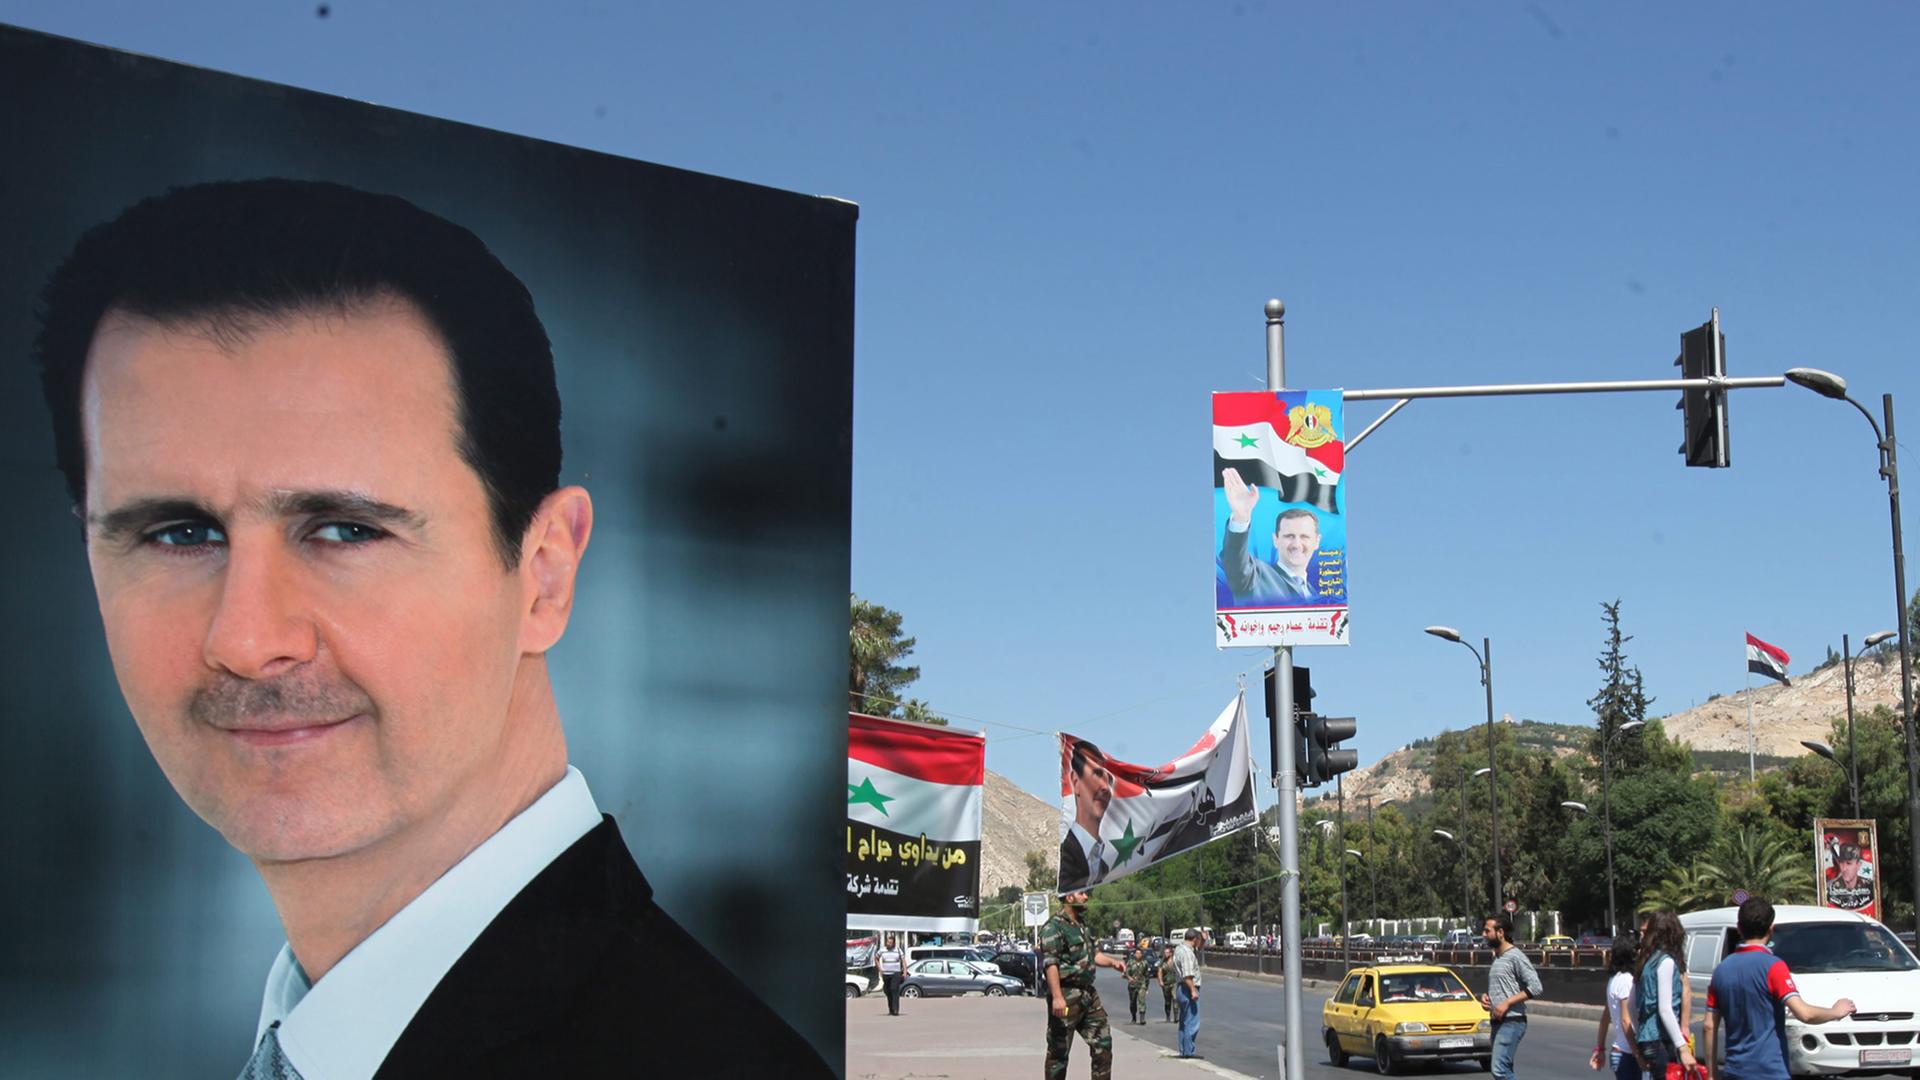 Großes Portrait von Assad auf einem Wahlplakat an einer Straße, im Hintergrund Straßenszene mit Autos und Fußgängern, an einer Straßenlampe ein kleineres Wahlplakat eines Oppositionellen.